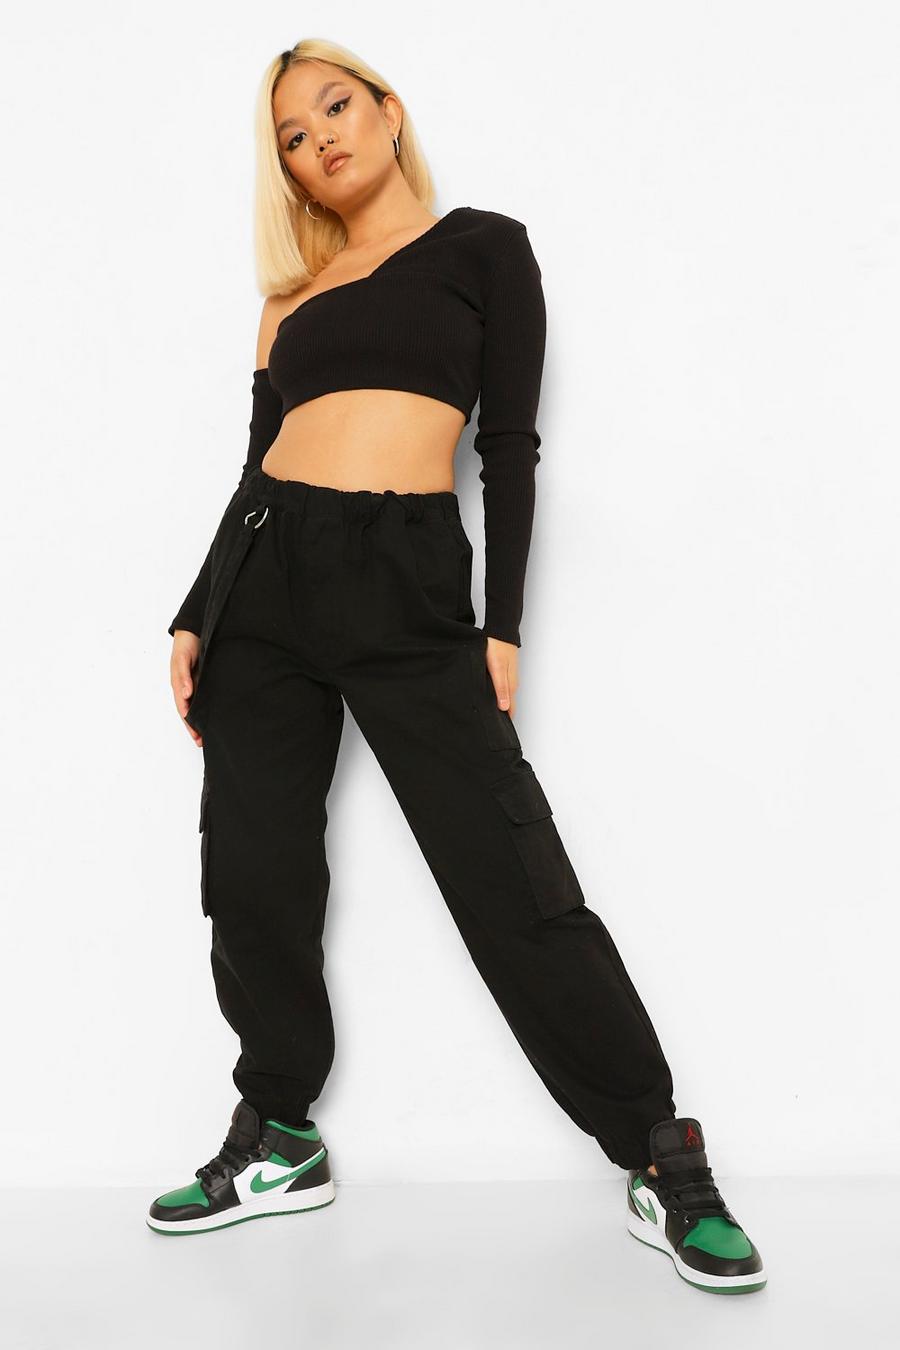 שחור negro מכנסי ריצה פטיט מבד ג'ינס עם כיס בסגנון שימושי